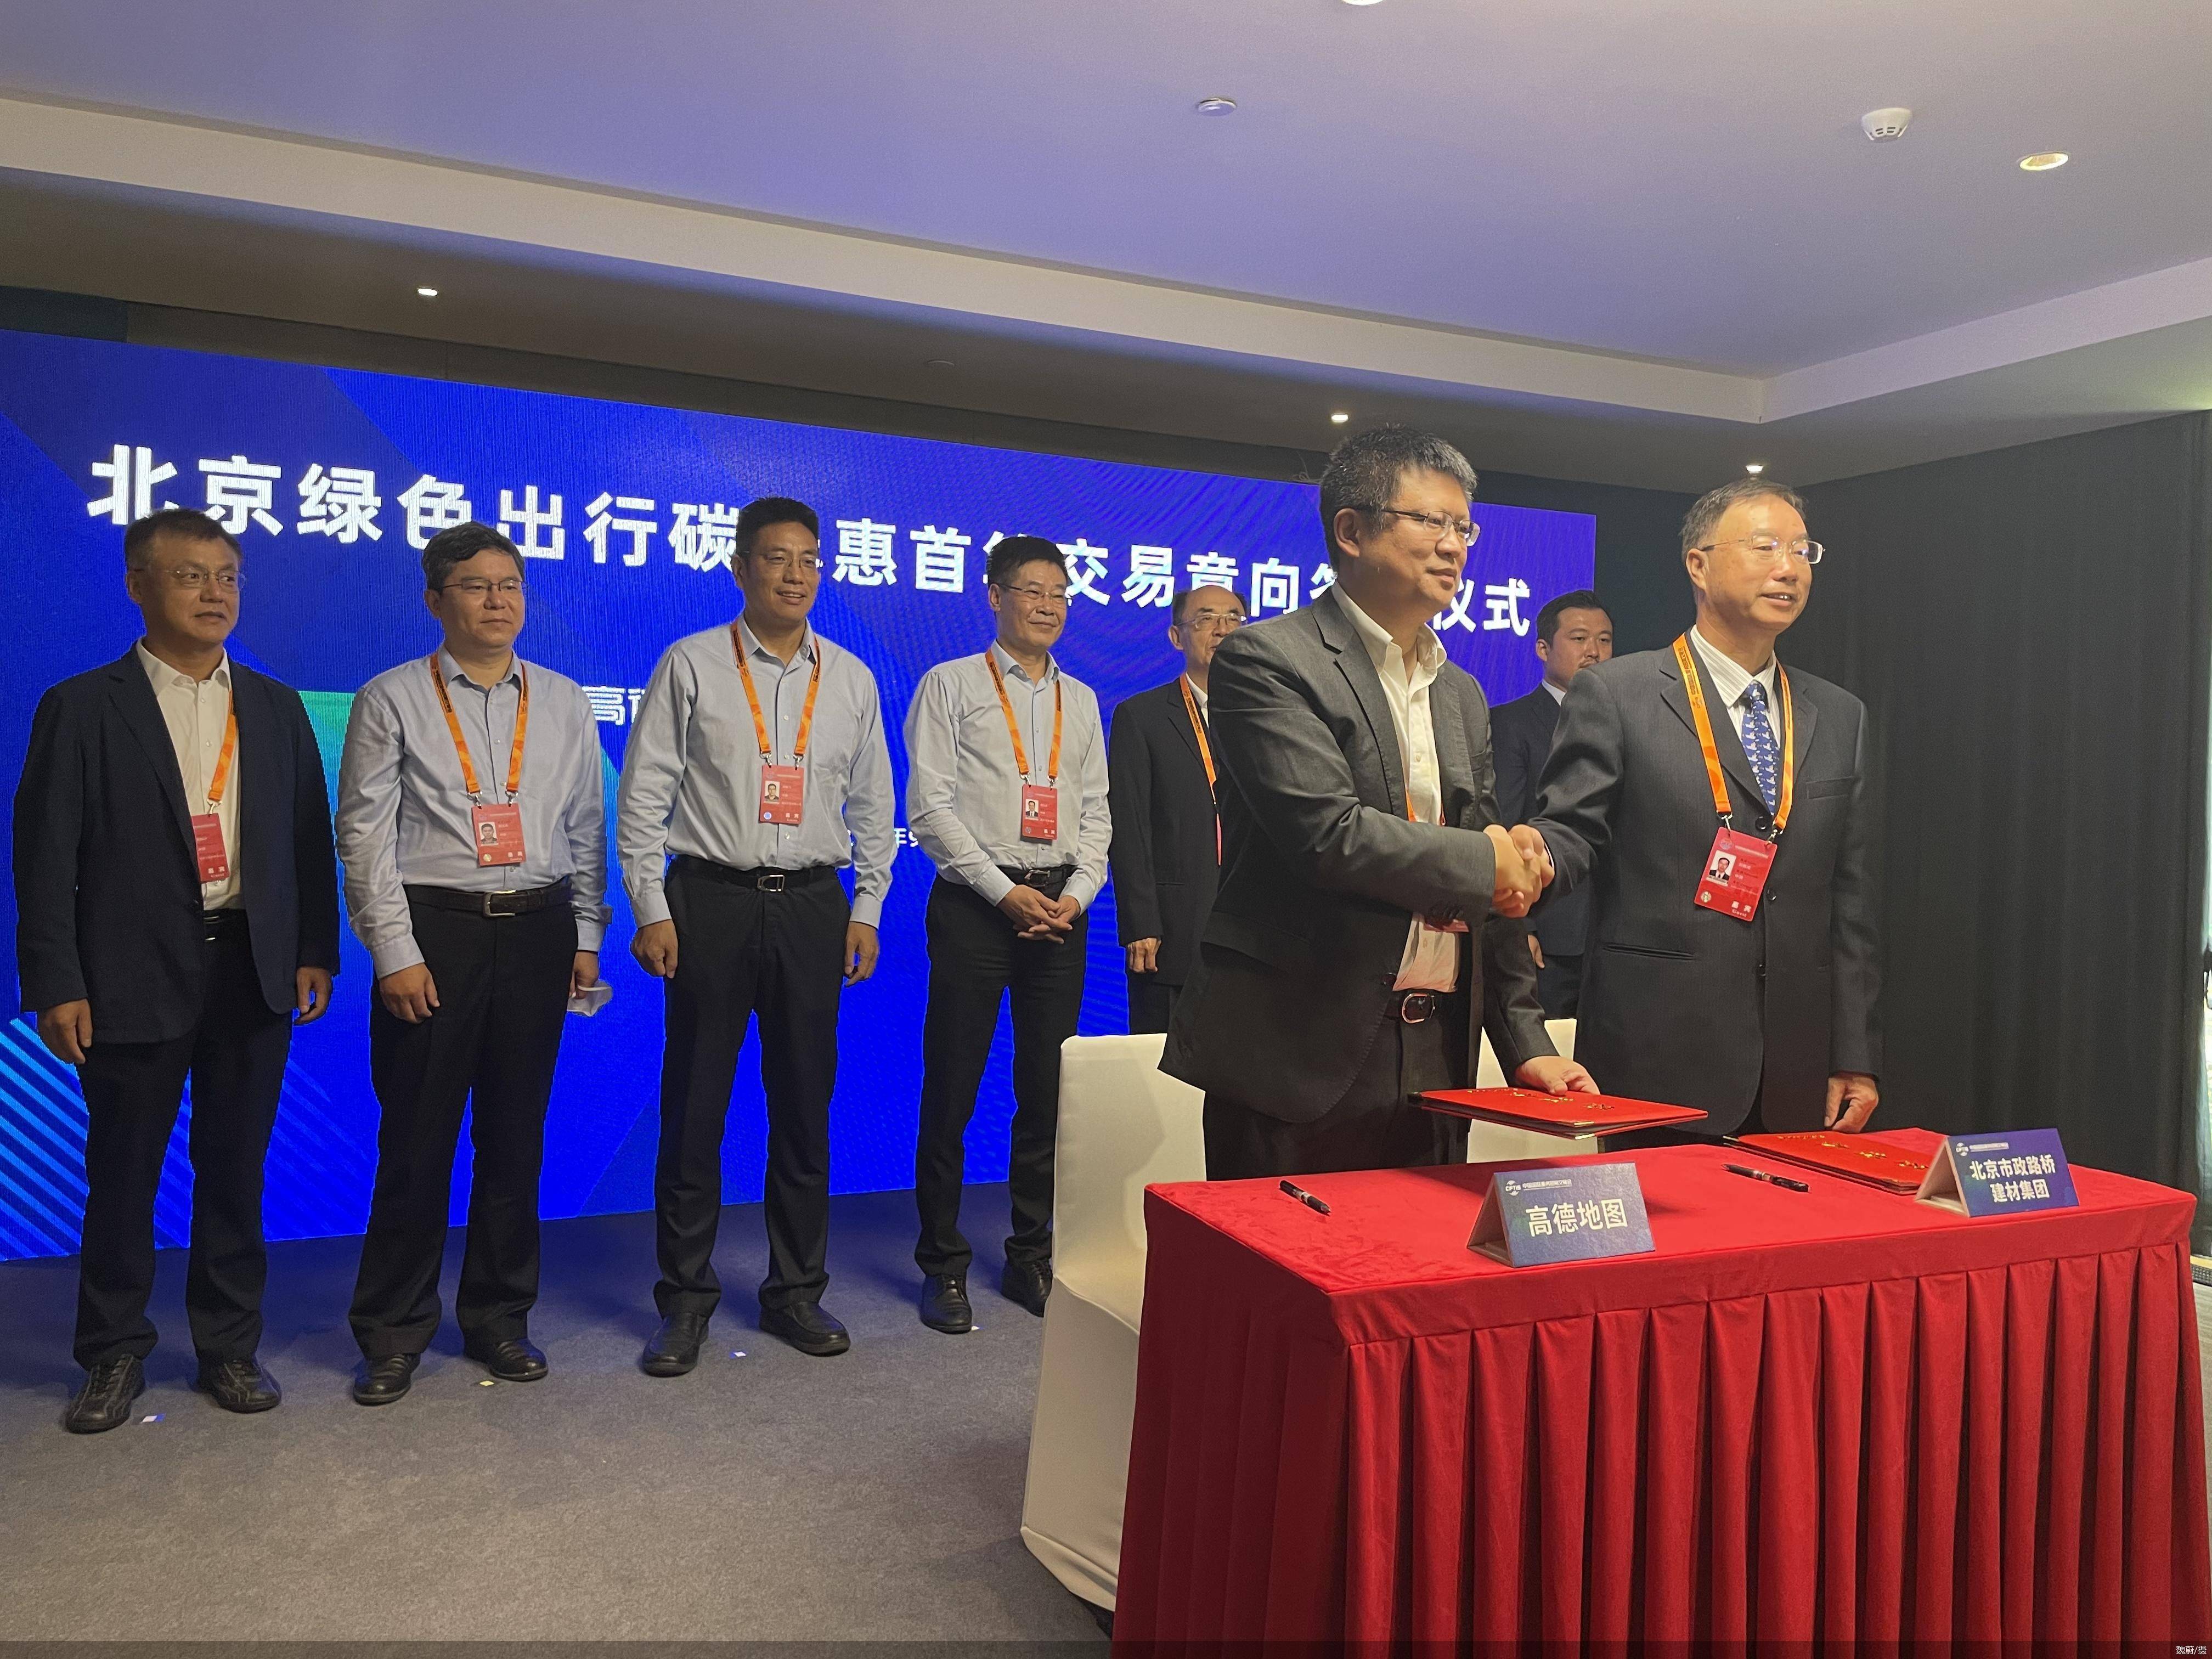 服貿觀止｜高德地圖與北京市政路橋建材集團達成首個碳交易簽約意向 科技 第1張